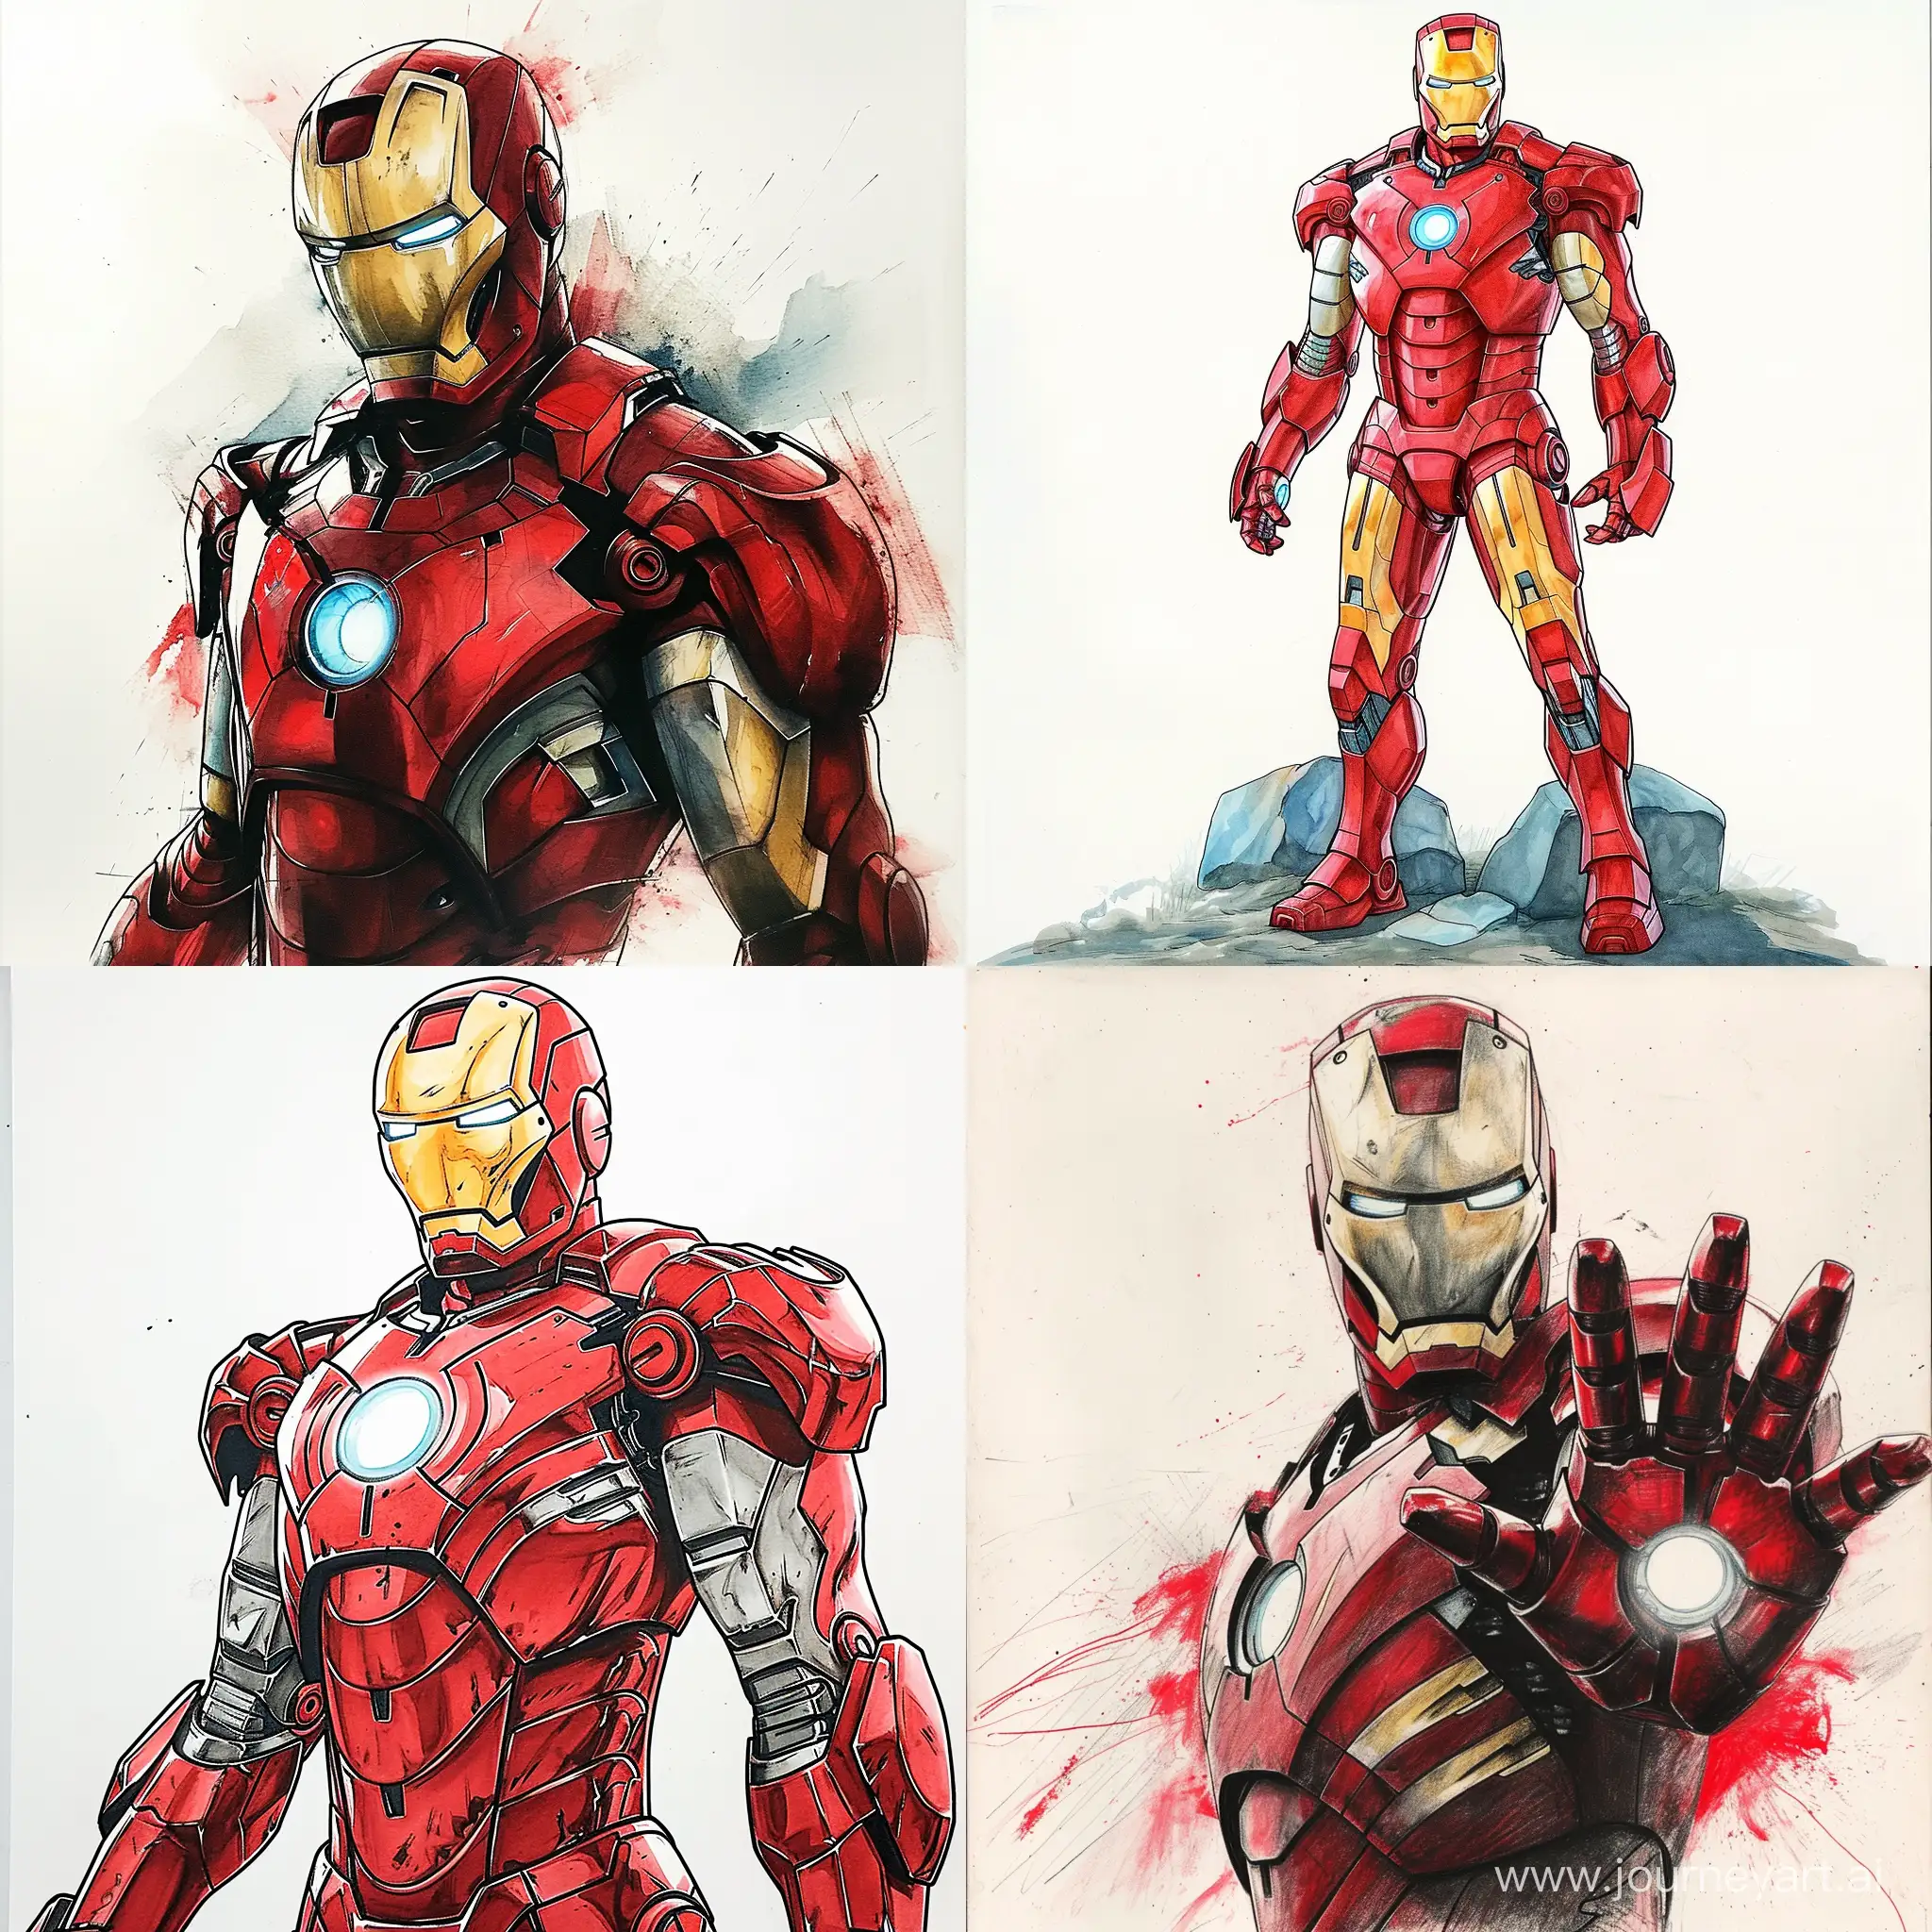 Iron-Man-in-Action-Powerful-Superhero-Illustration